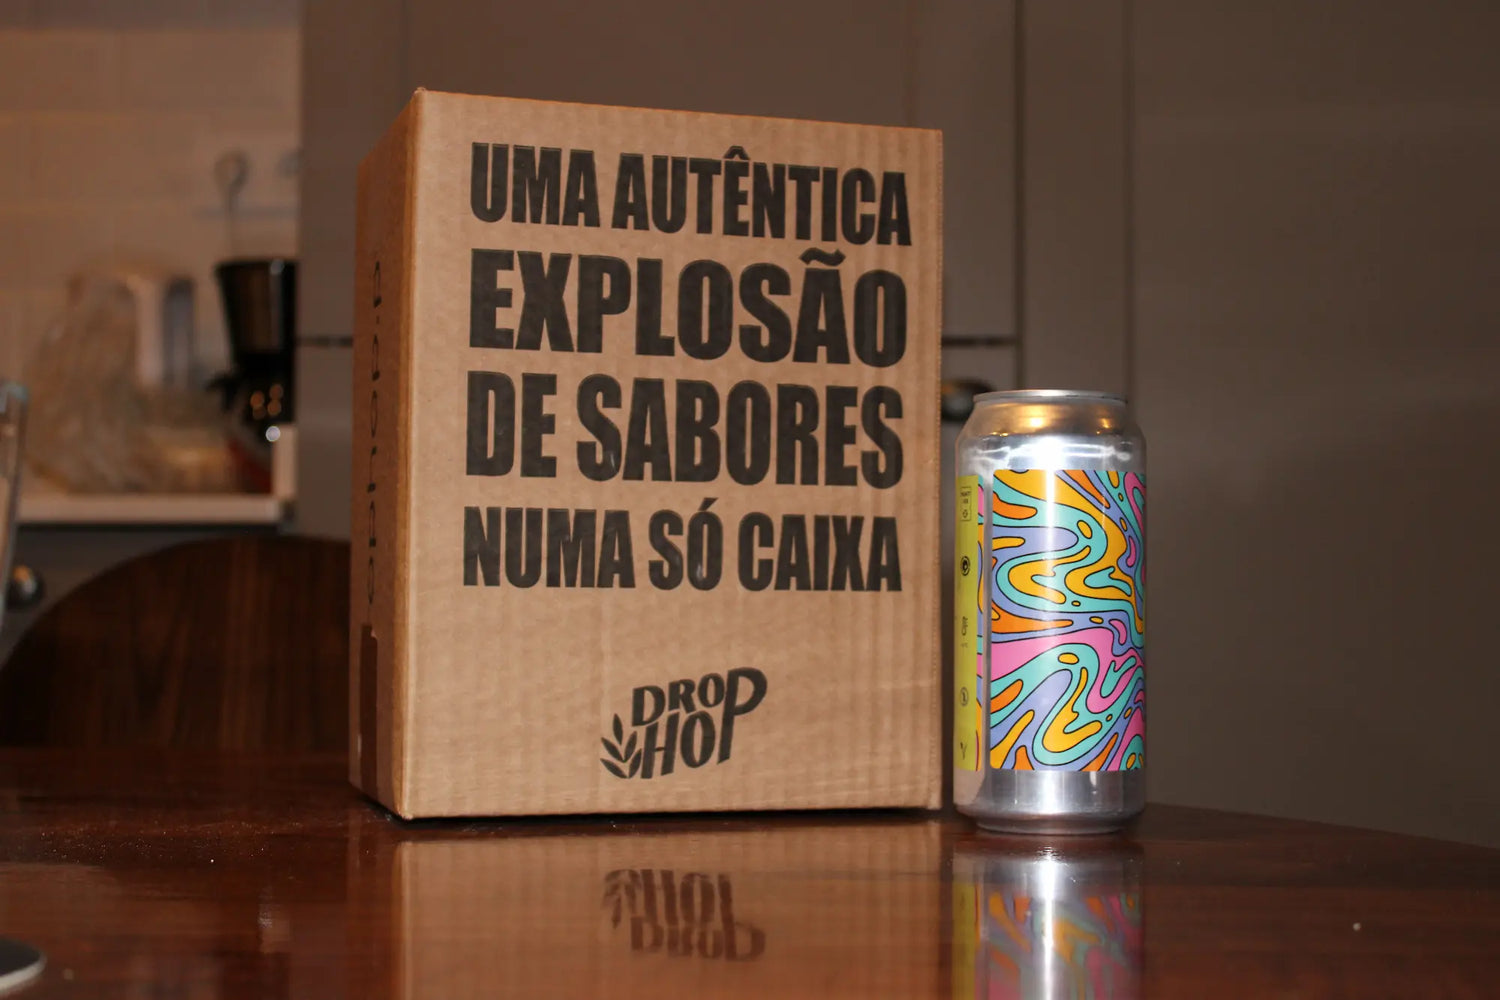 Pack da Drop Hop de cerveja artesanal com mensagem escrita na caixa, pousado numa mesa junto com uma lata de cerveja